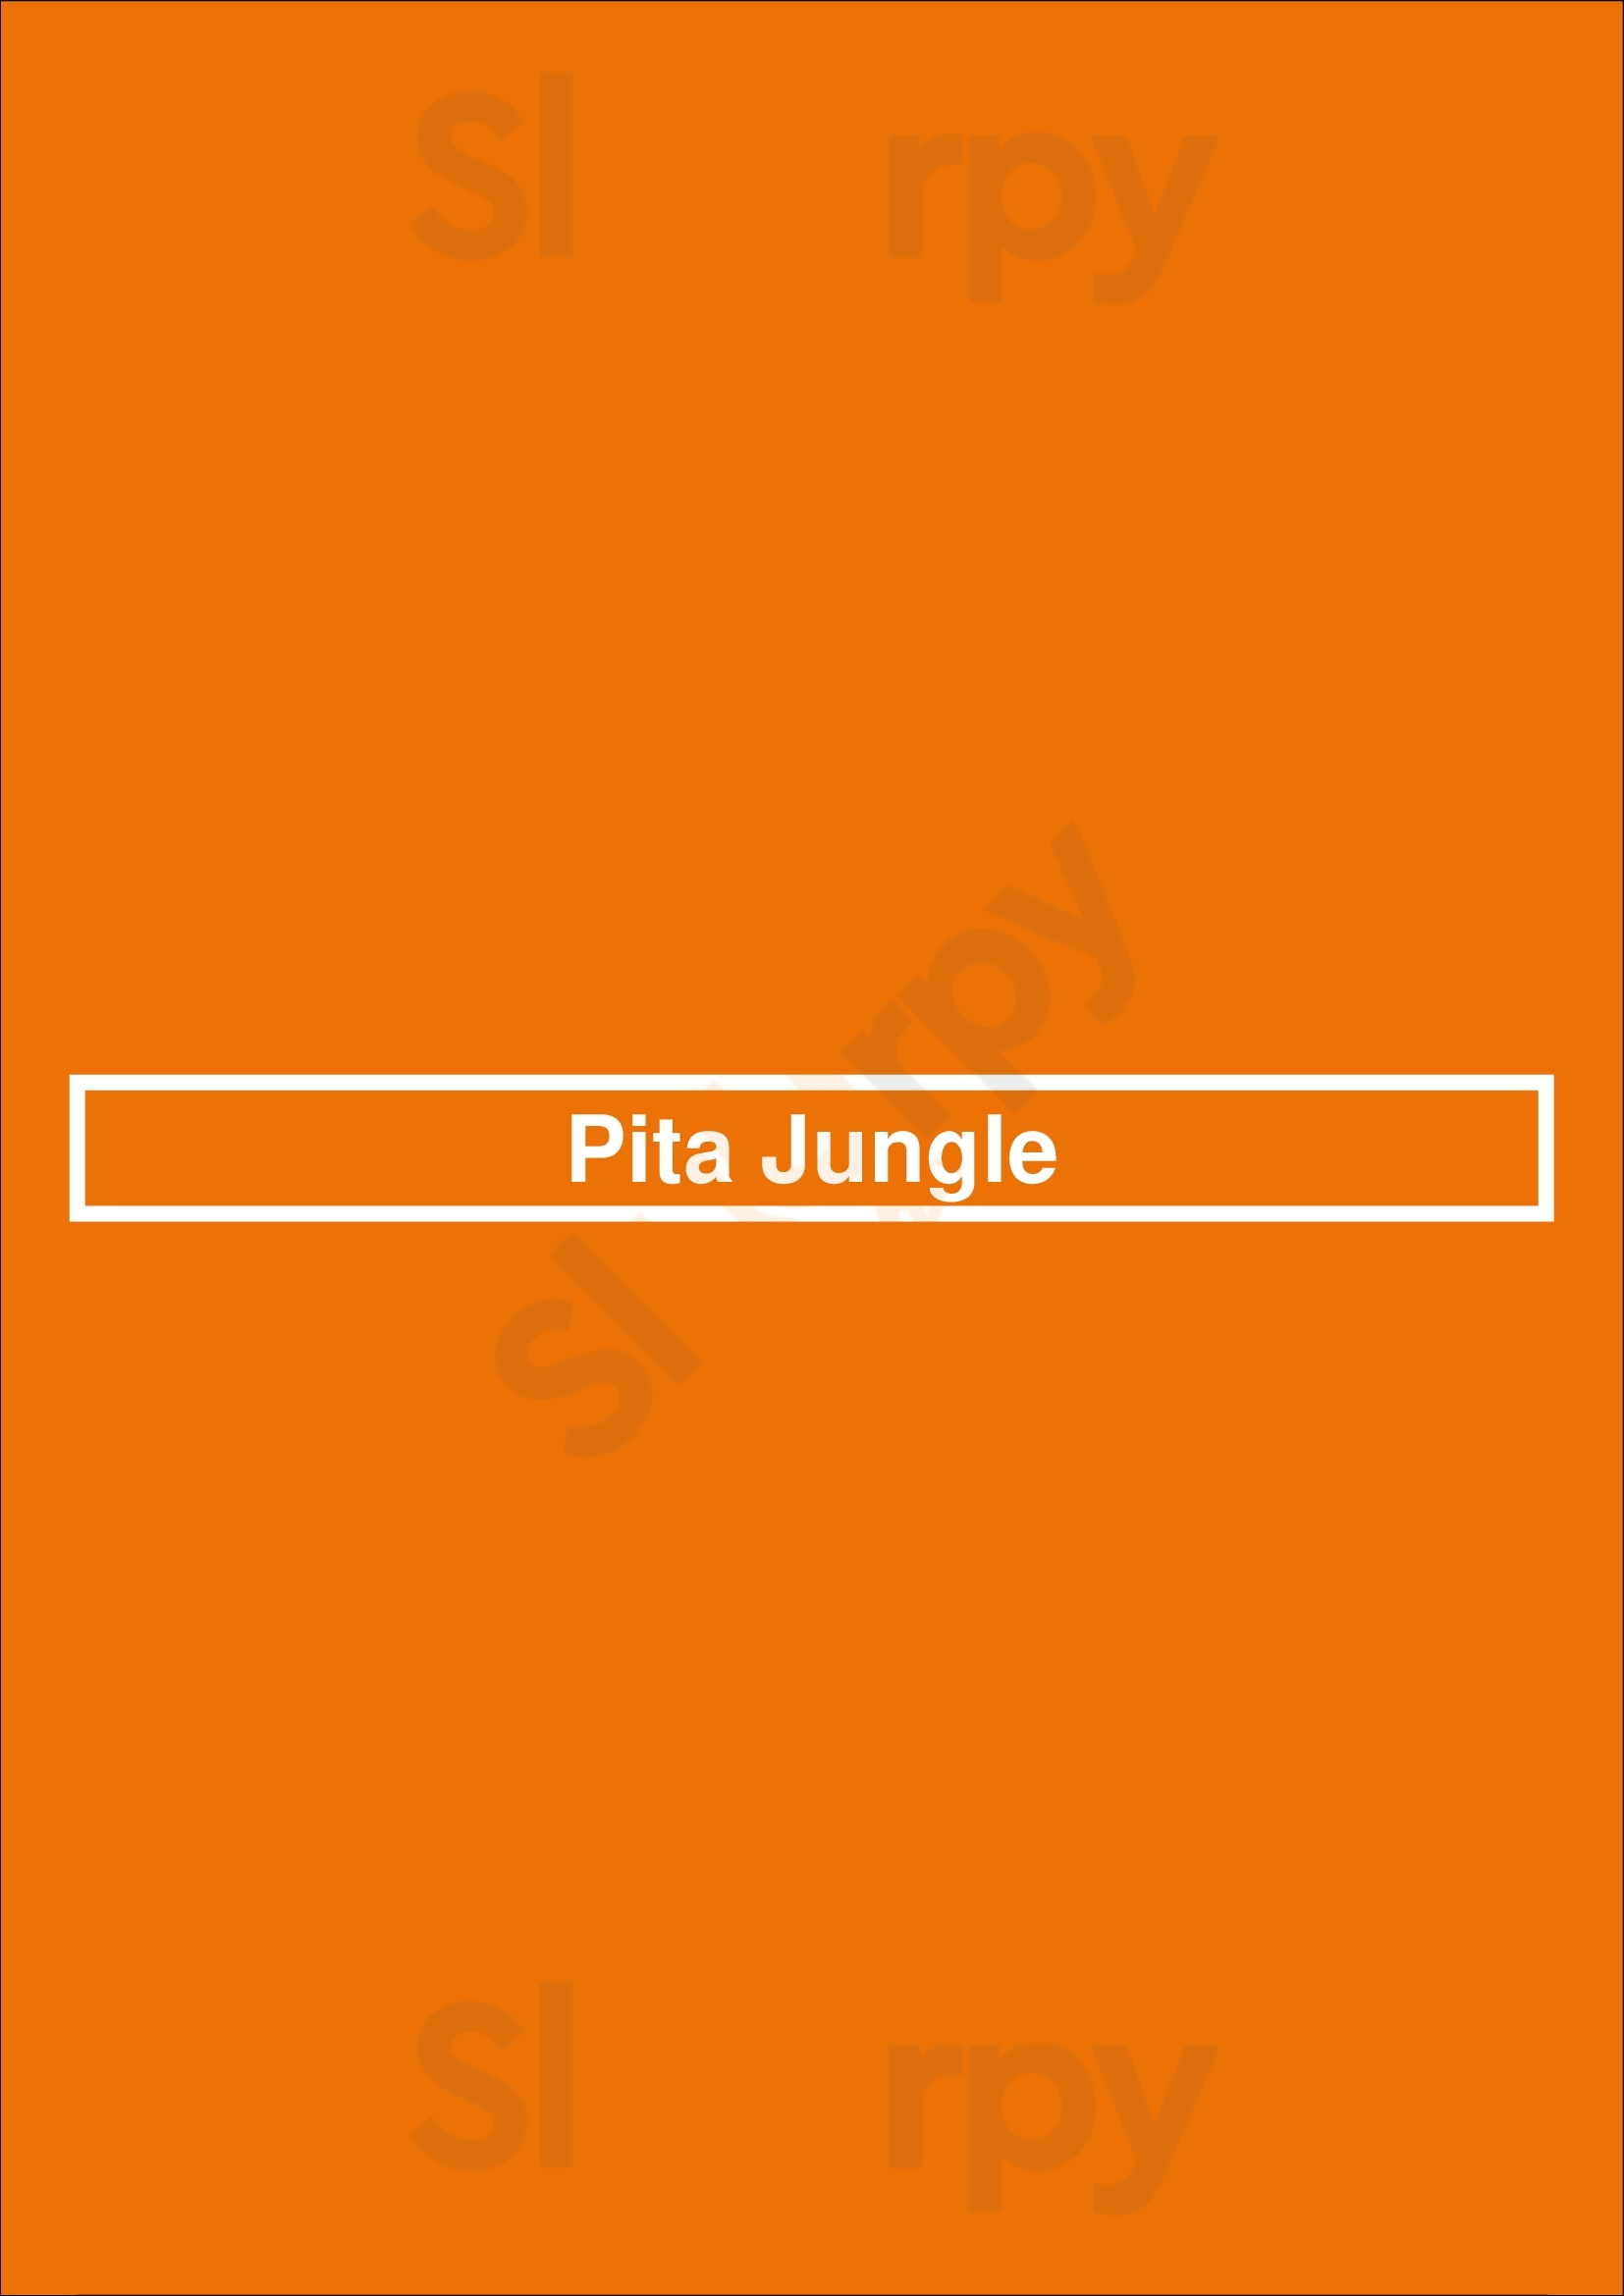 Pita Jungle Tucson Menu - 1